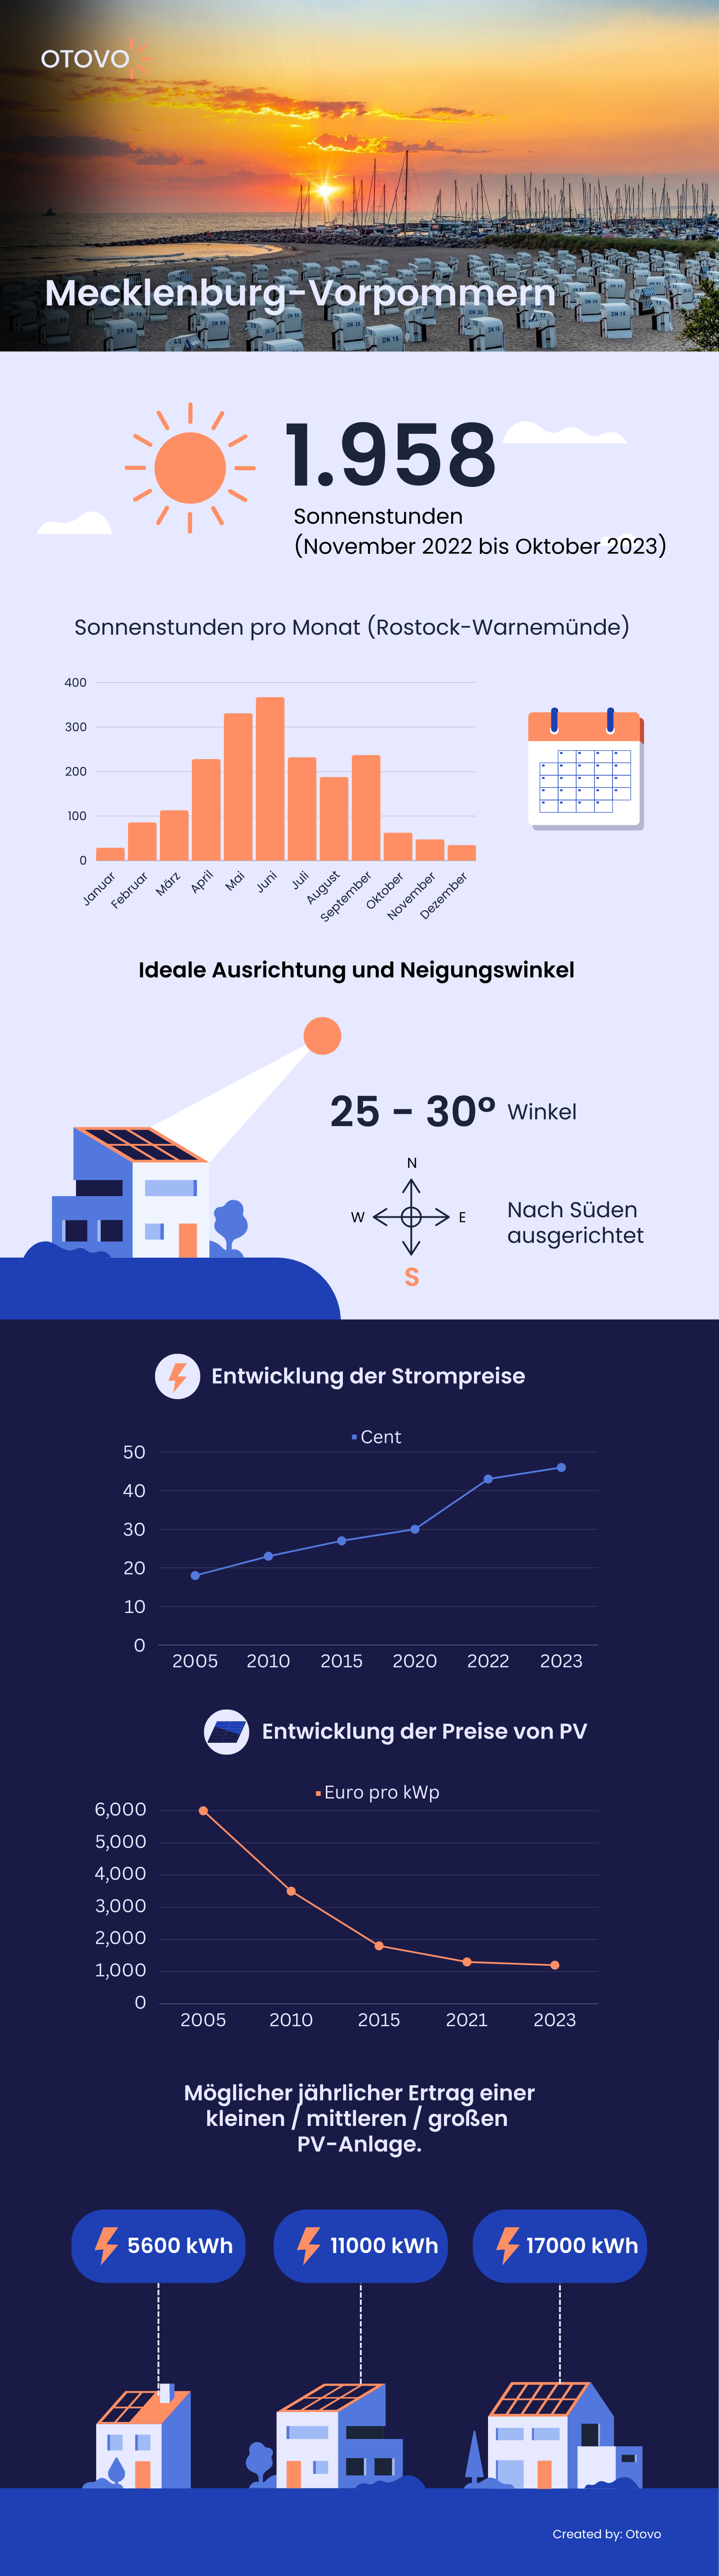 Infografik zu Solaranlagen in Mecklenburg-Vorpommern